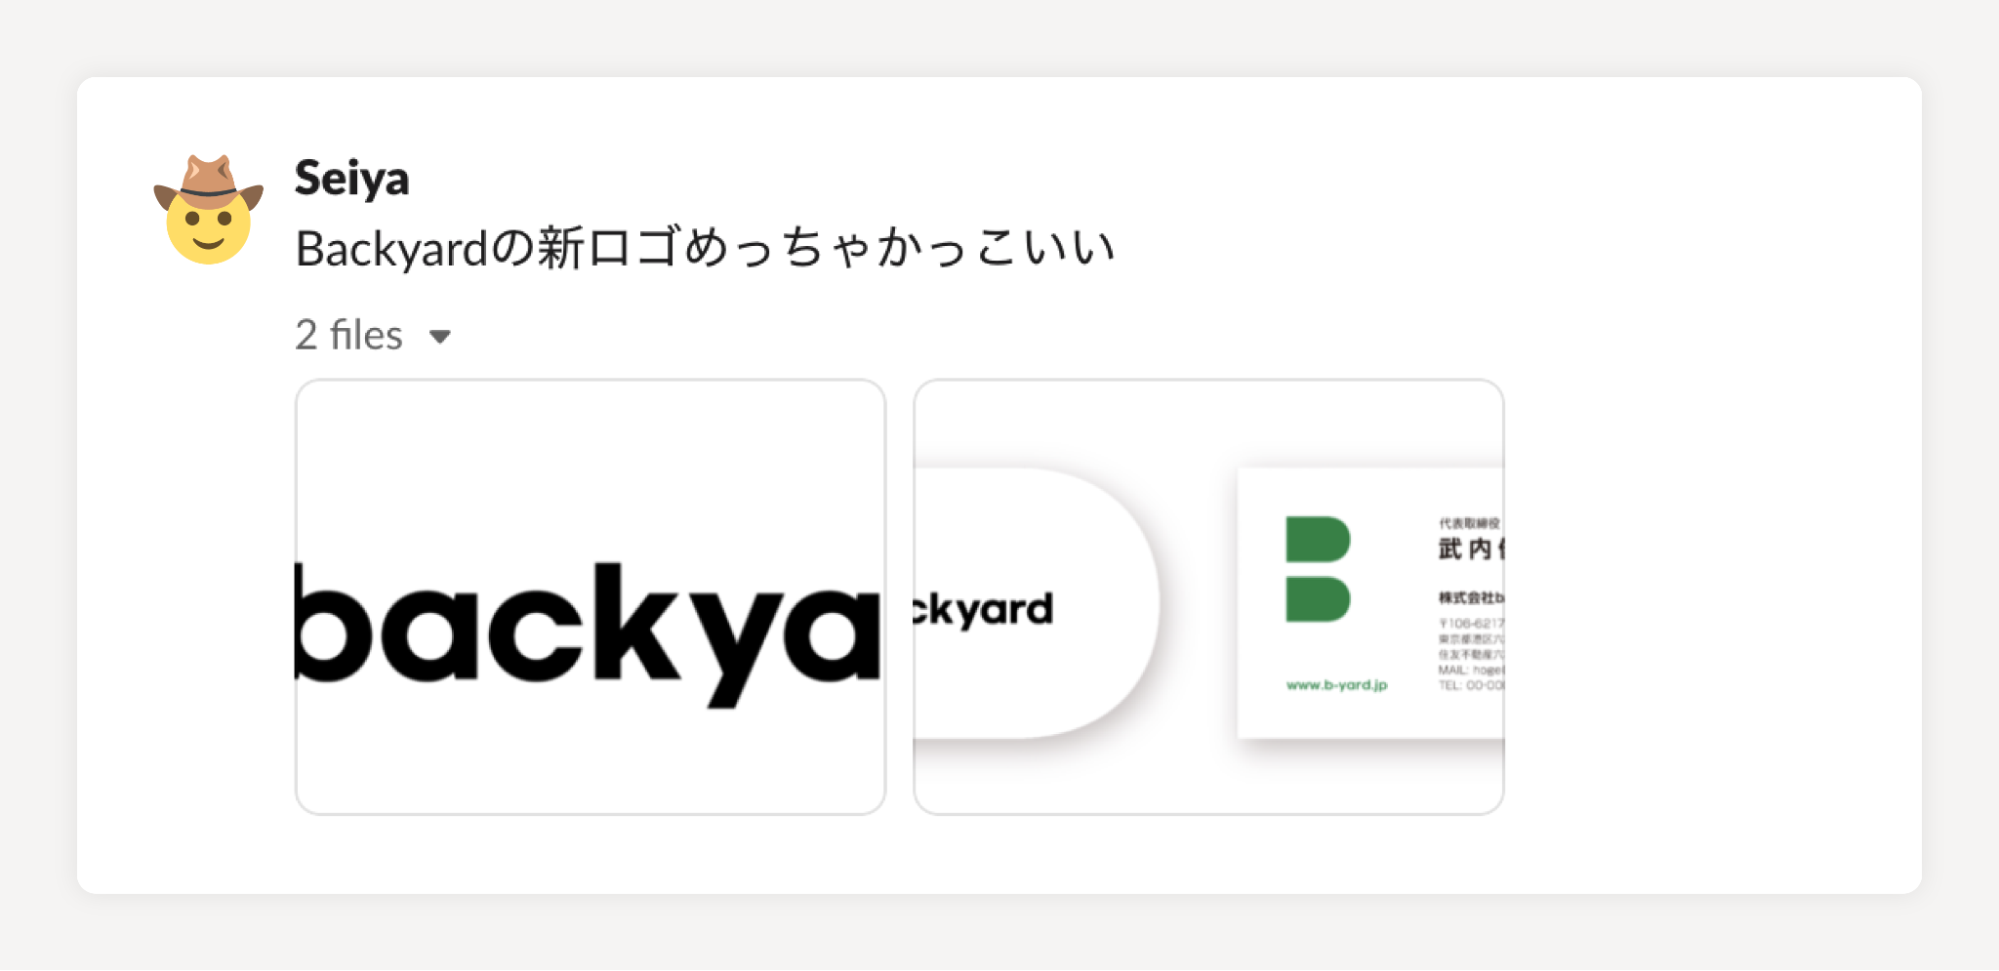 チャットのキャプチャ。Seiyaさんの「Backyardの新ロゴめっちゃかっこいい」というコメント。